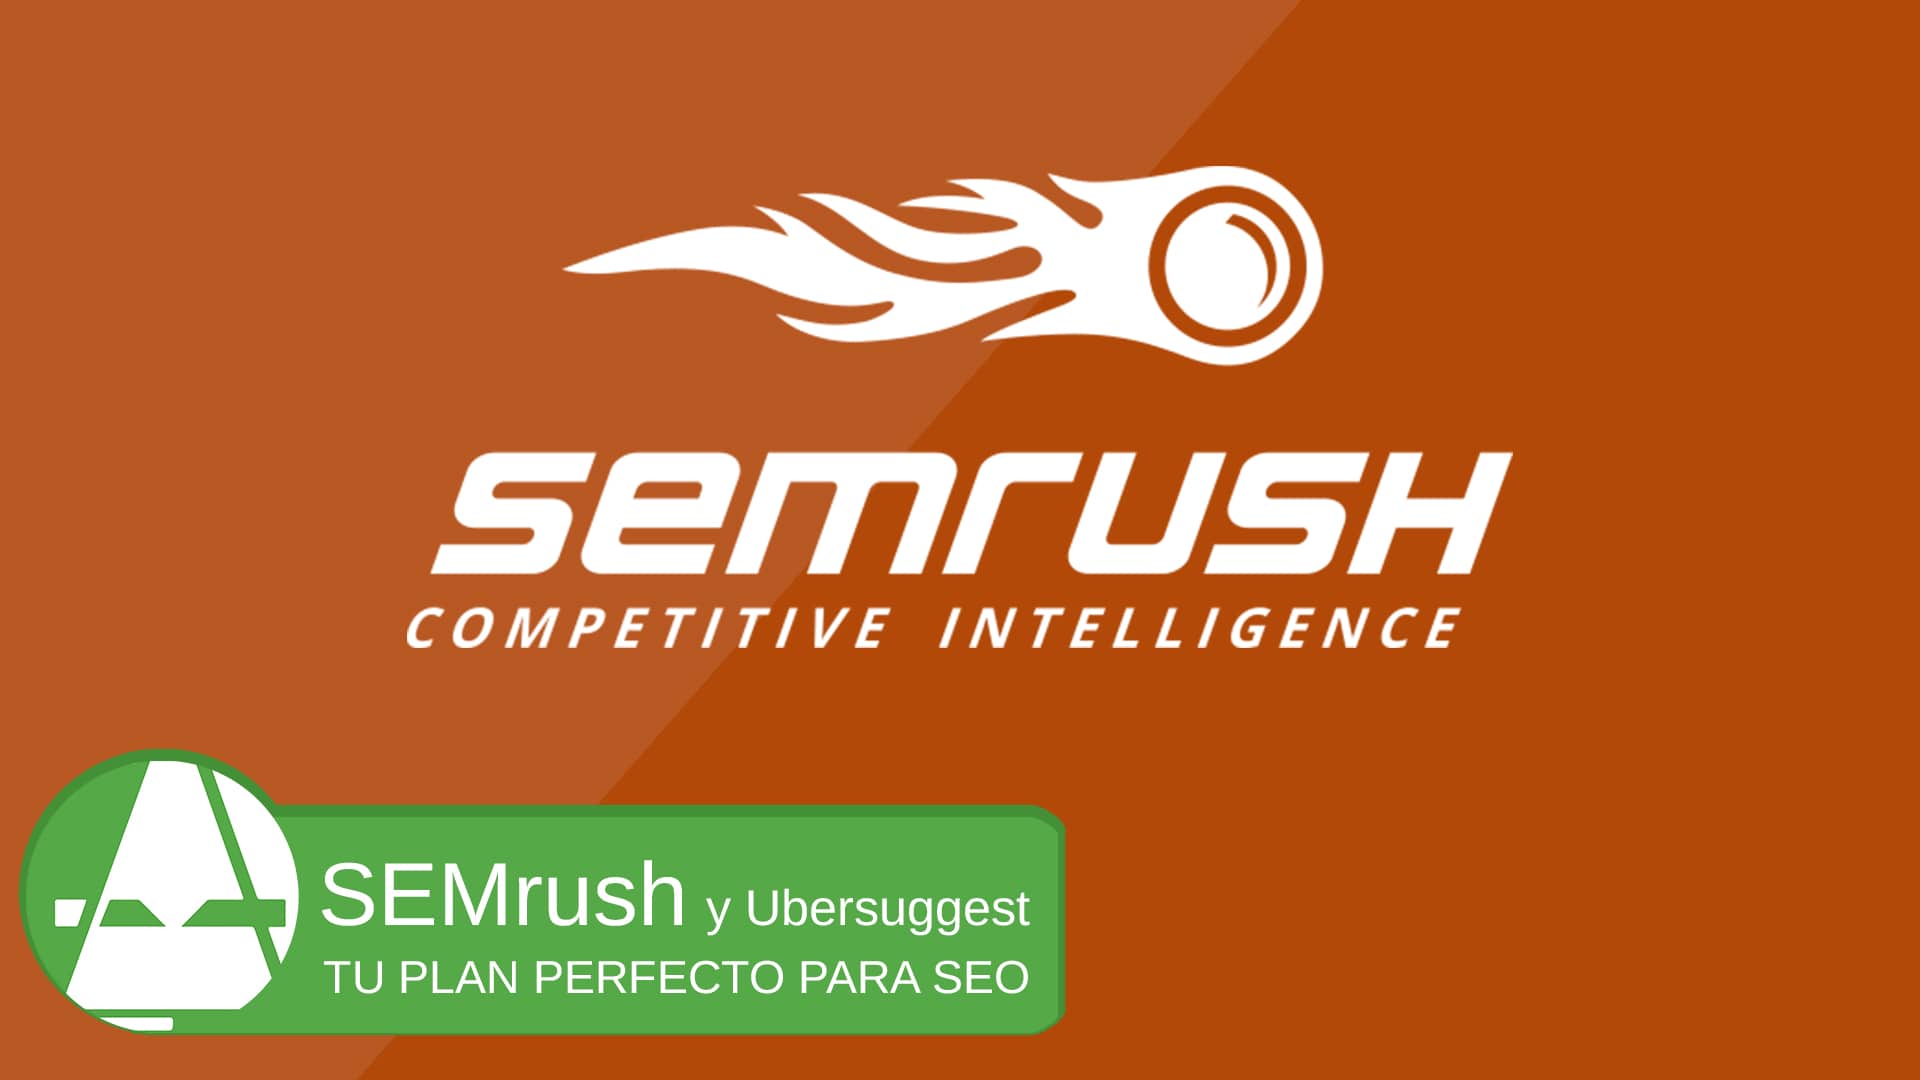 SEMrush posicionamiento web con herramientas seo